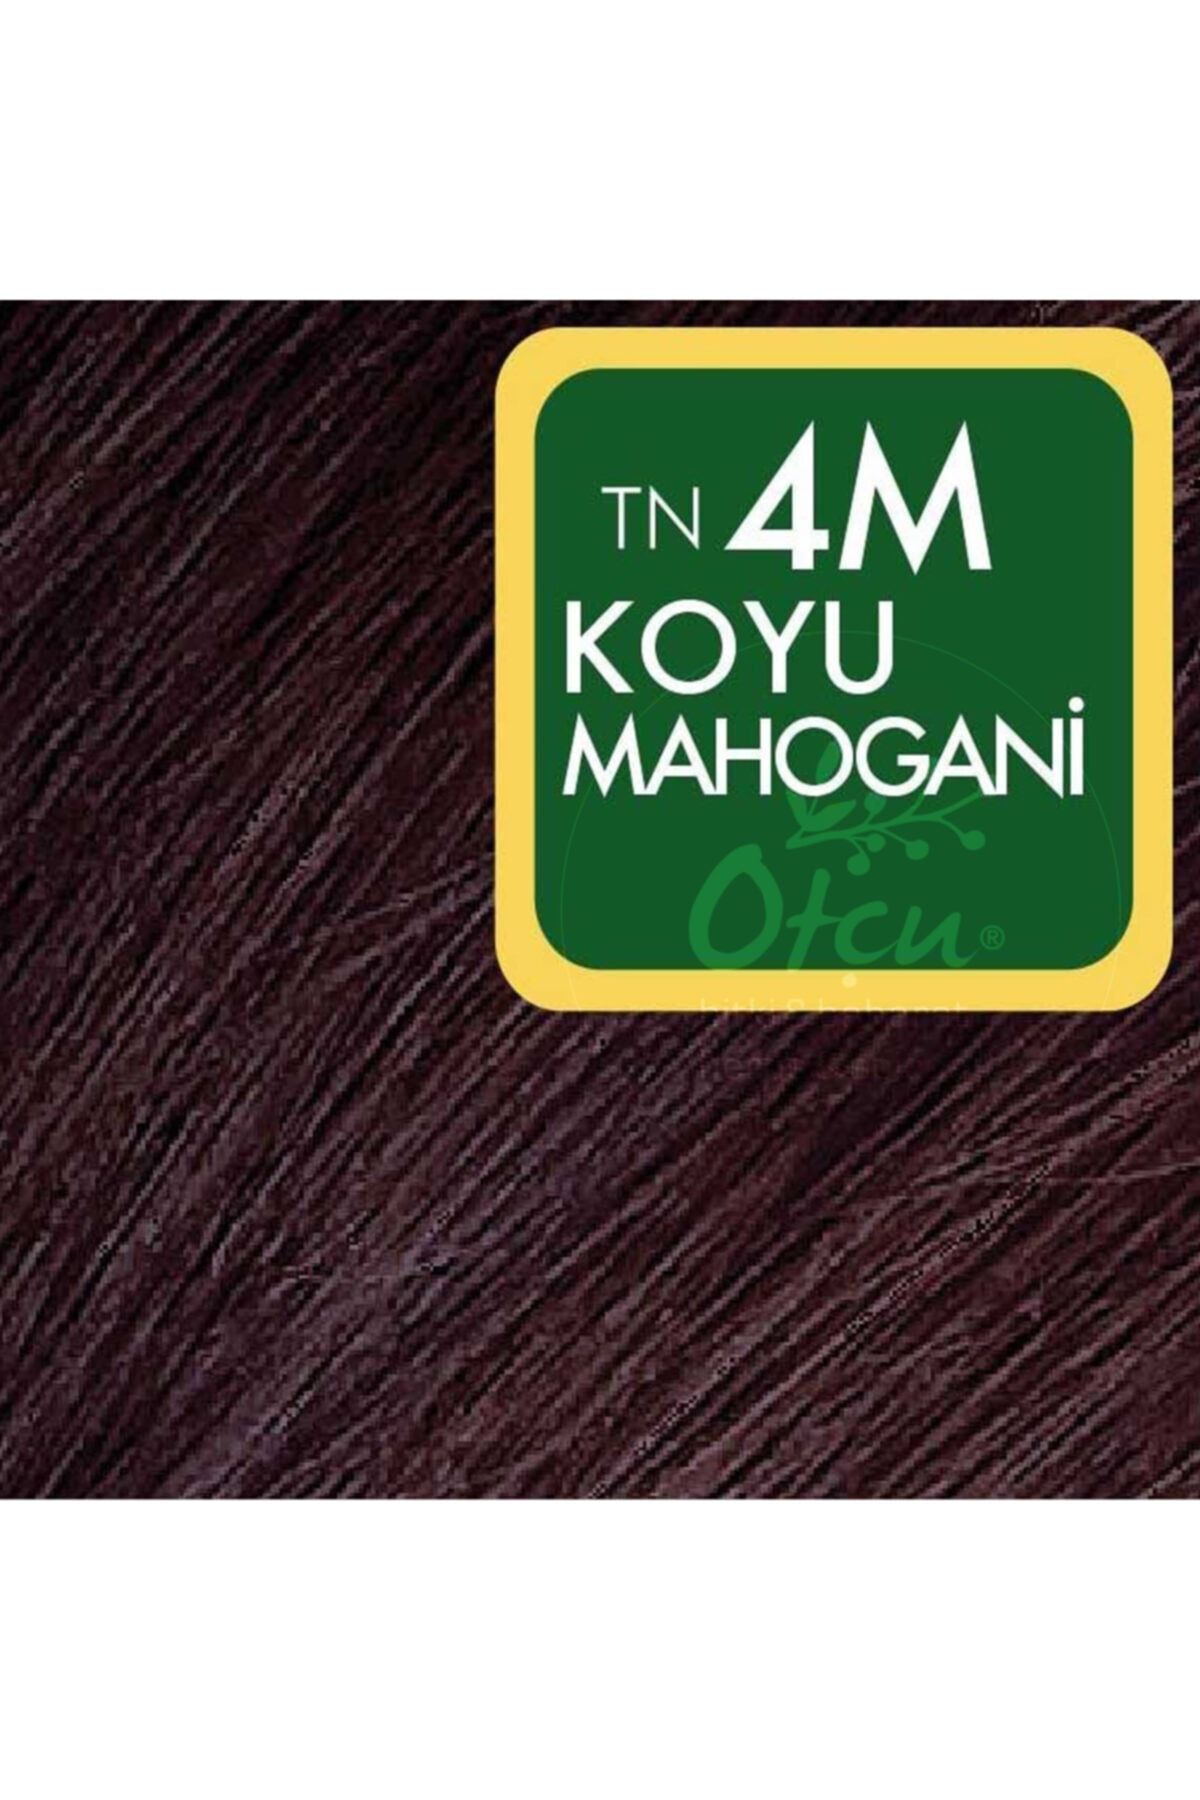 Koyu Mahogani Organik Saç Boyası 4m_2